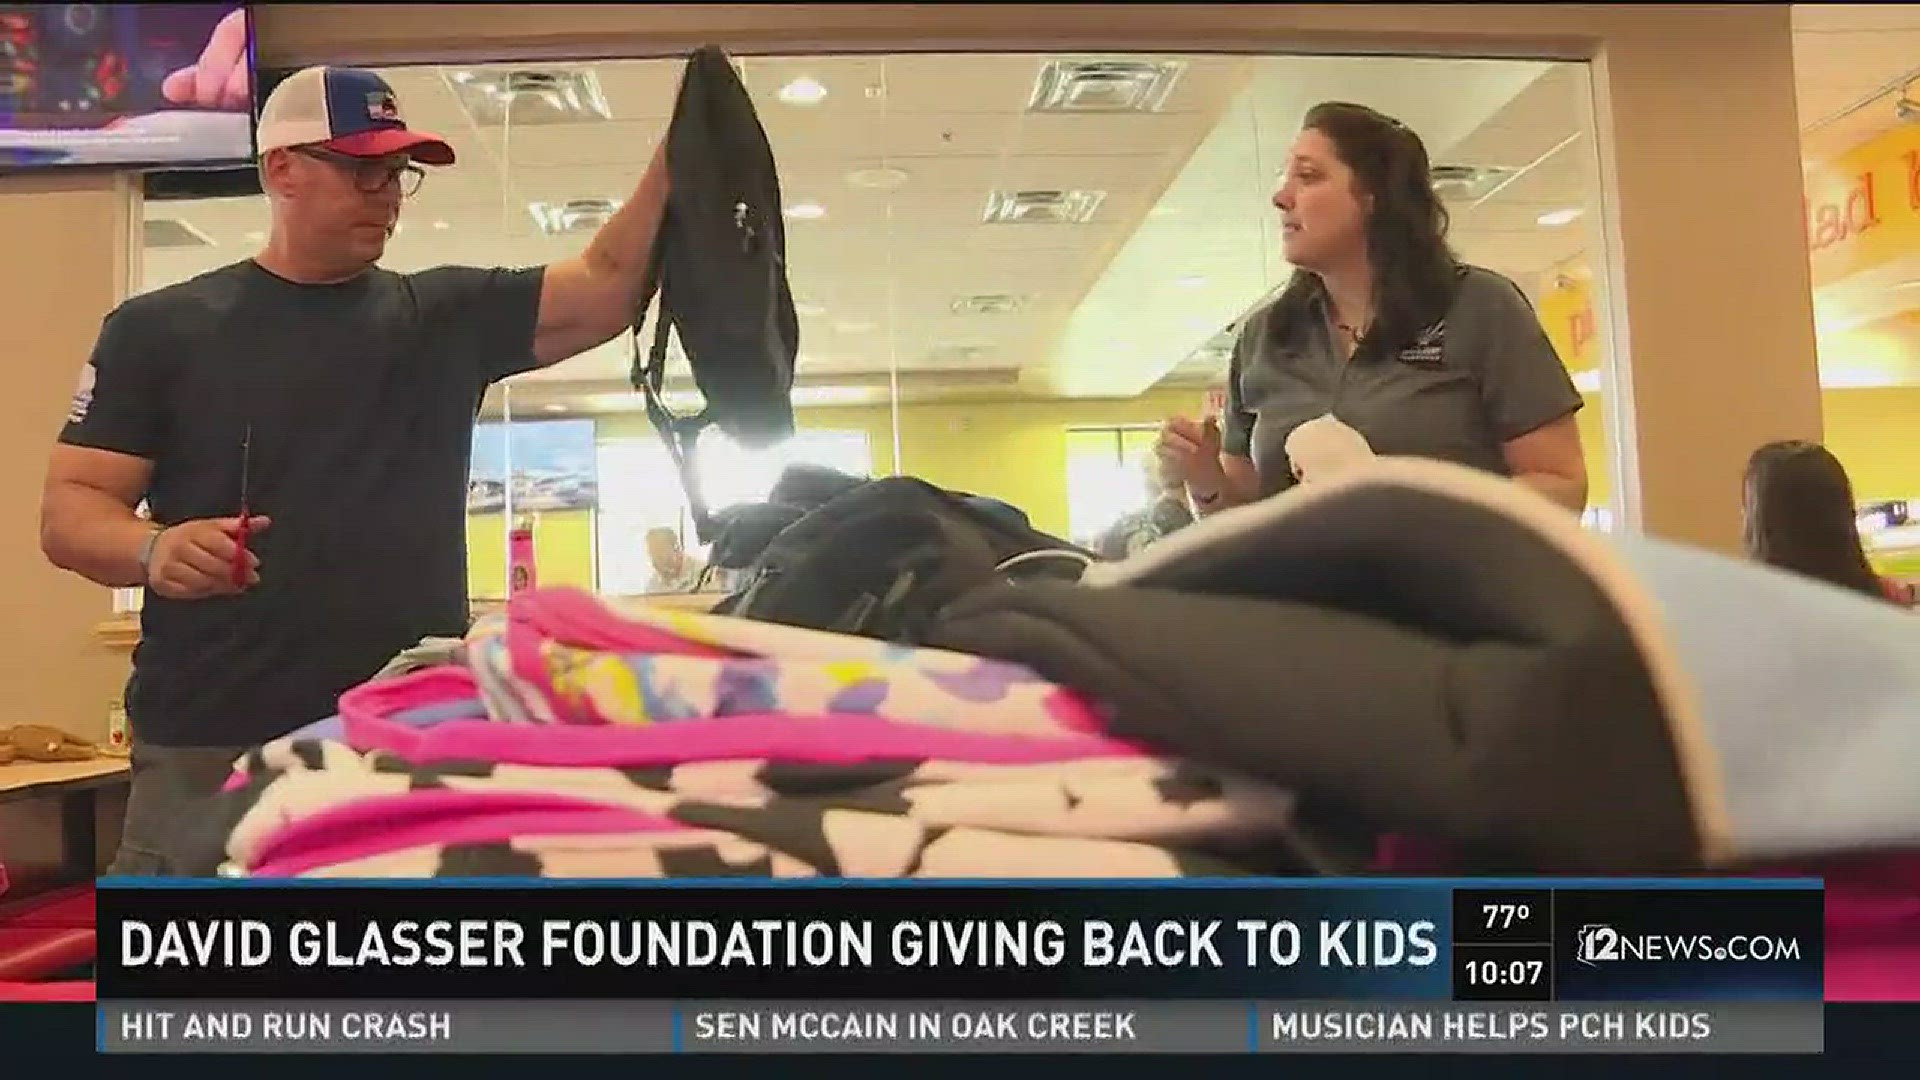 David Glasser Foundation giving back to kids